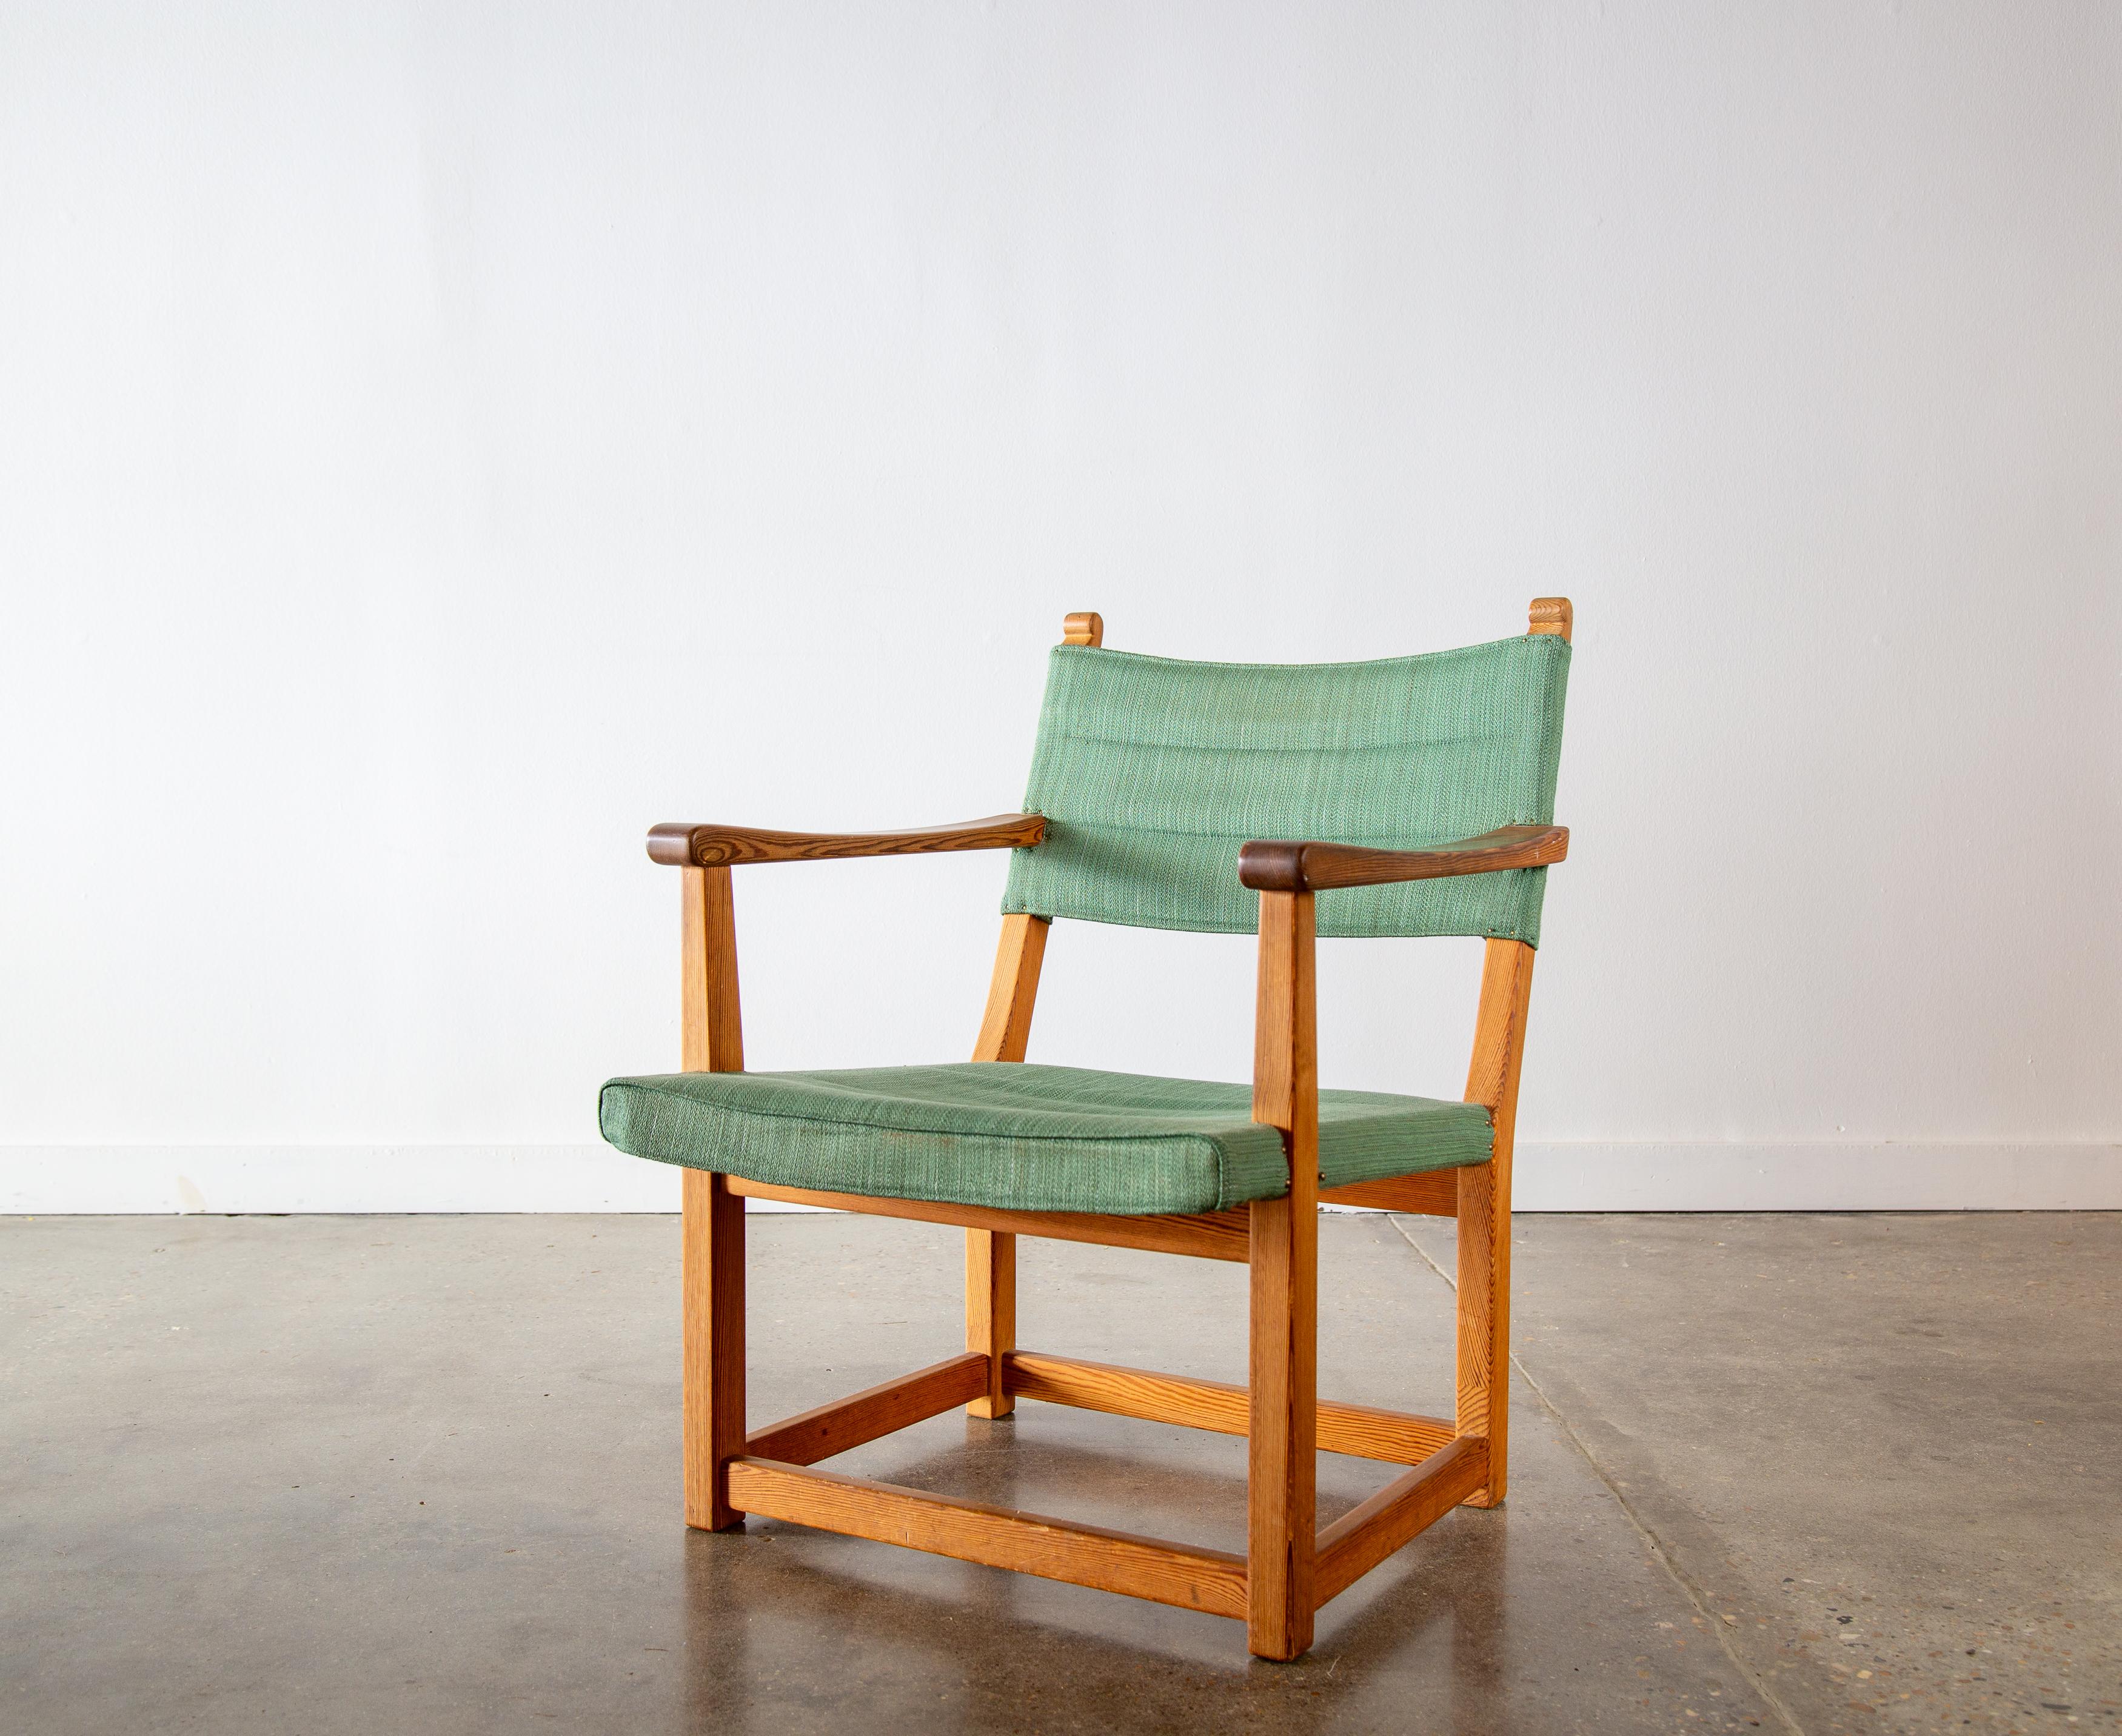 Ein äußerst seltener Stuhl, entworfen von Carl Malmsten.  Der Sessel 